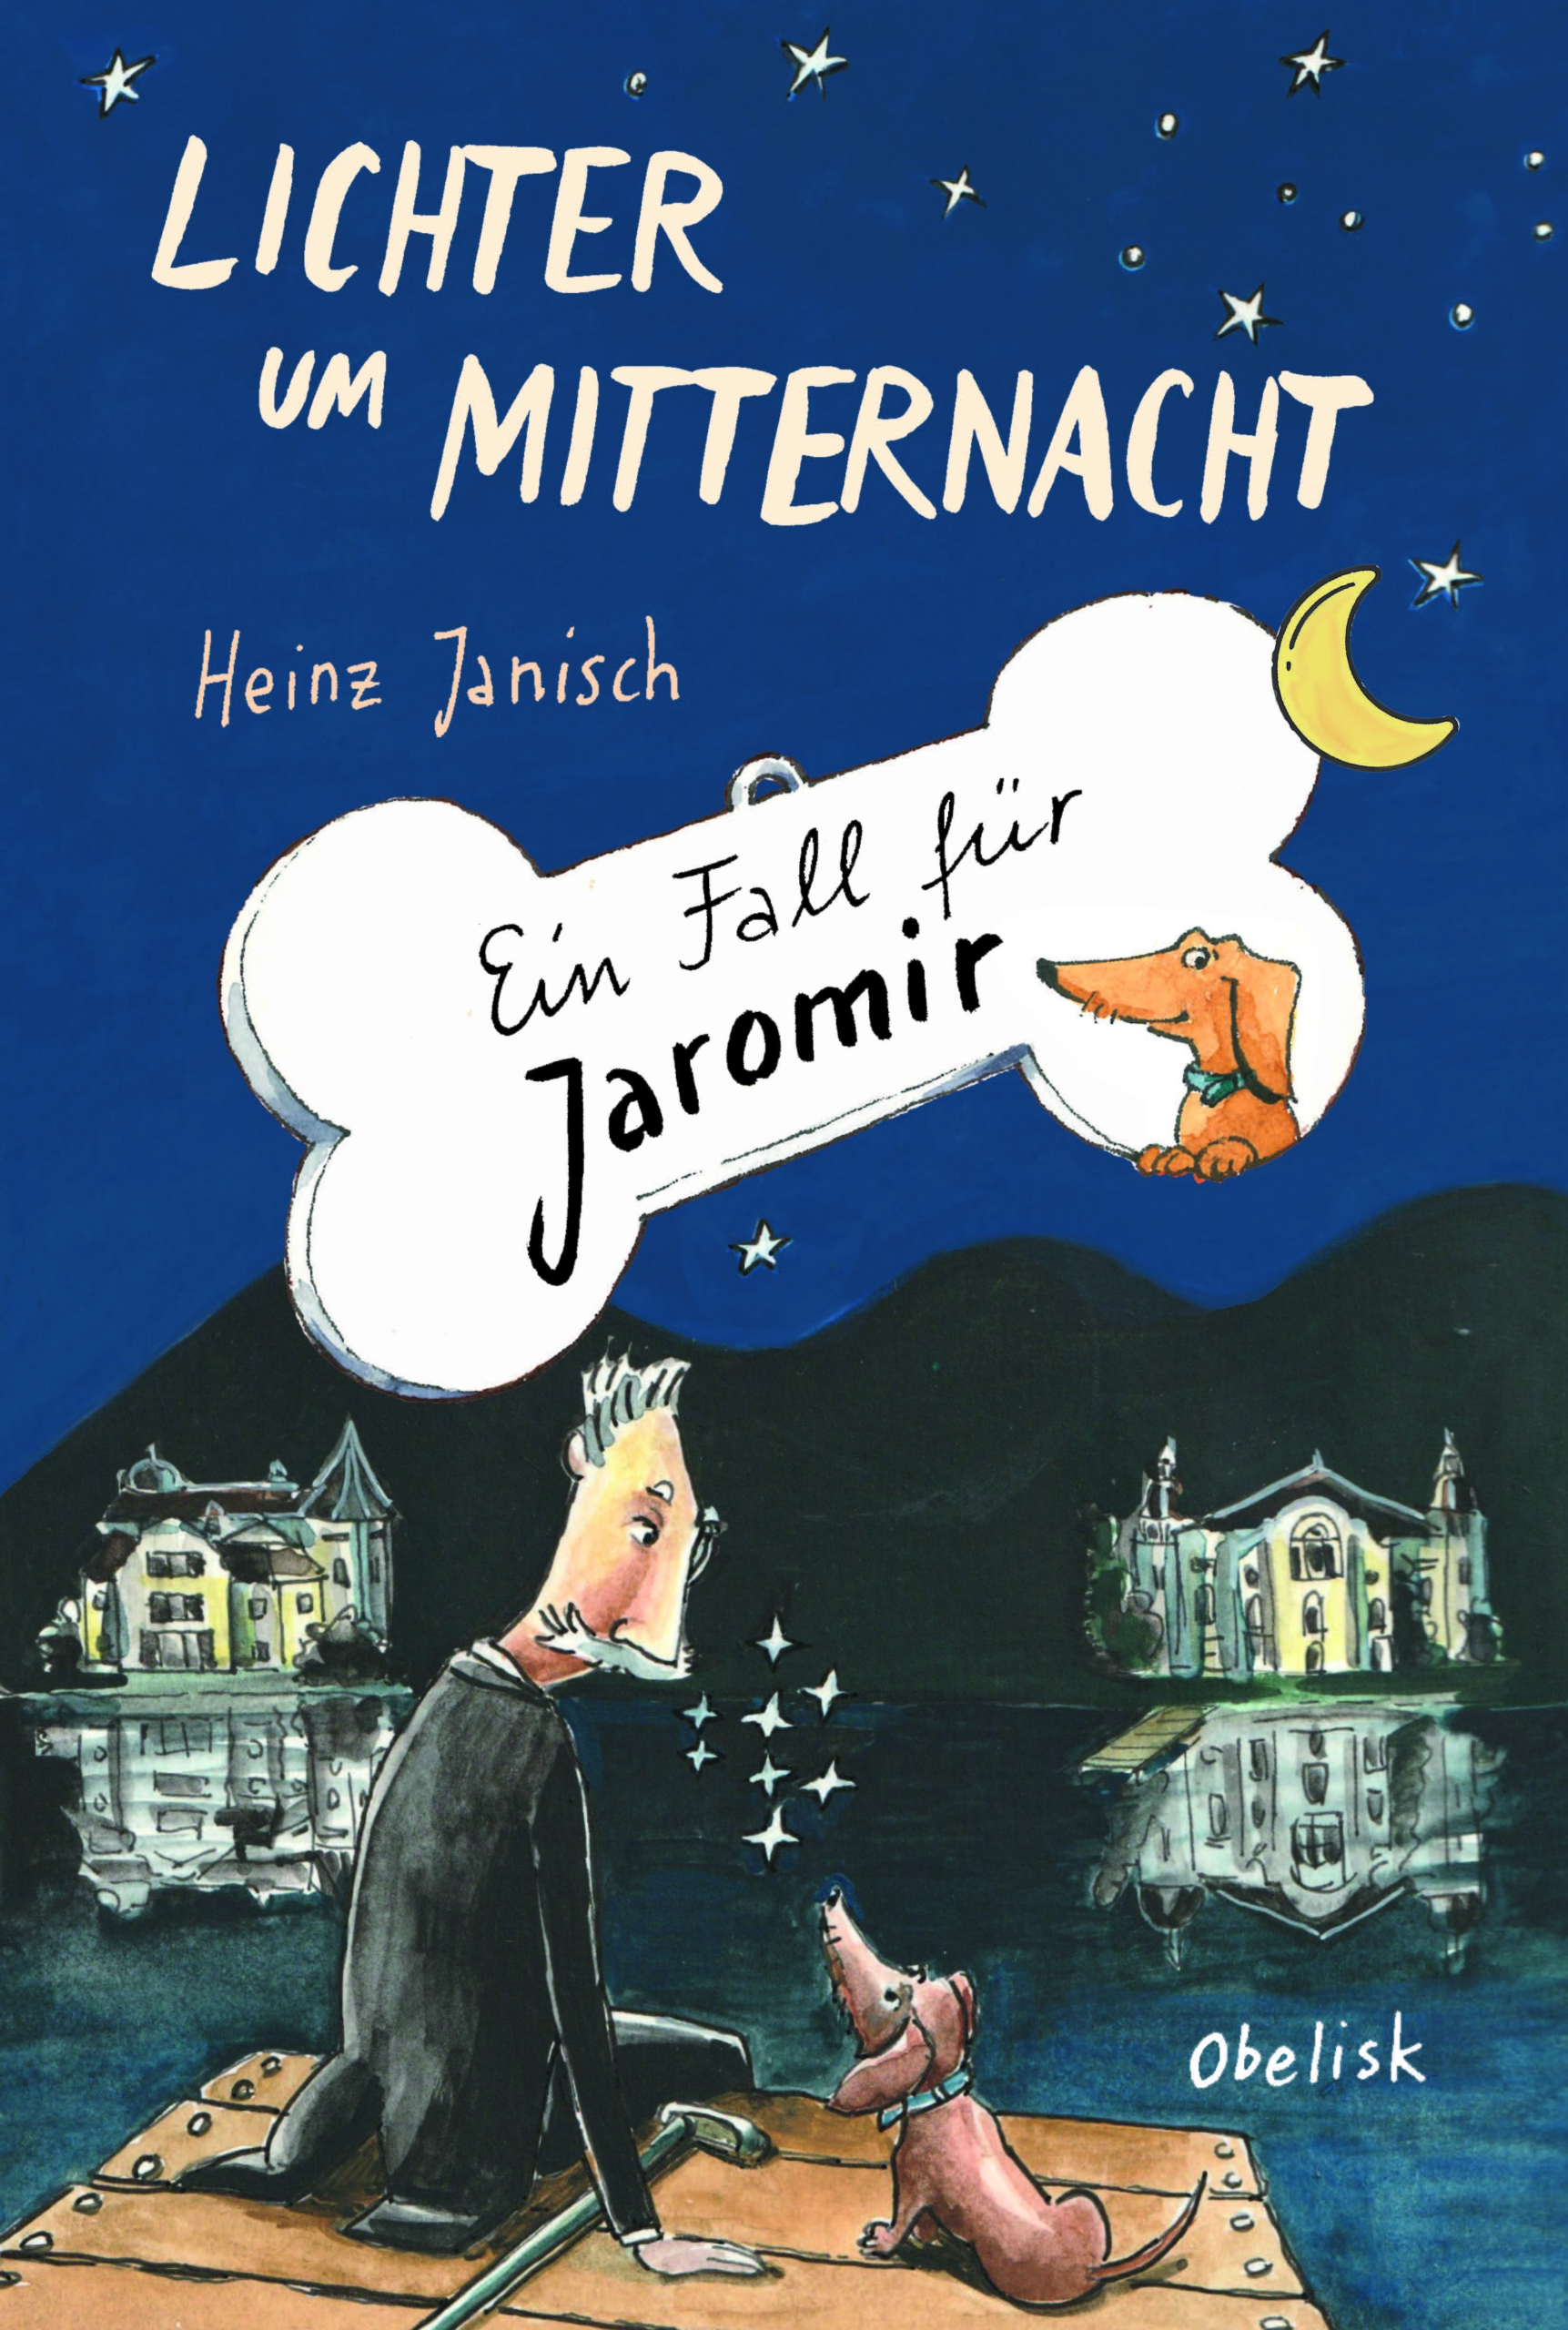 Cover - Heinz Janisch - Lichter um Mitternacht - Zeichnung alter Mann mit Hund sitzen nachts vor Kulisse mit alten Villen